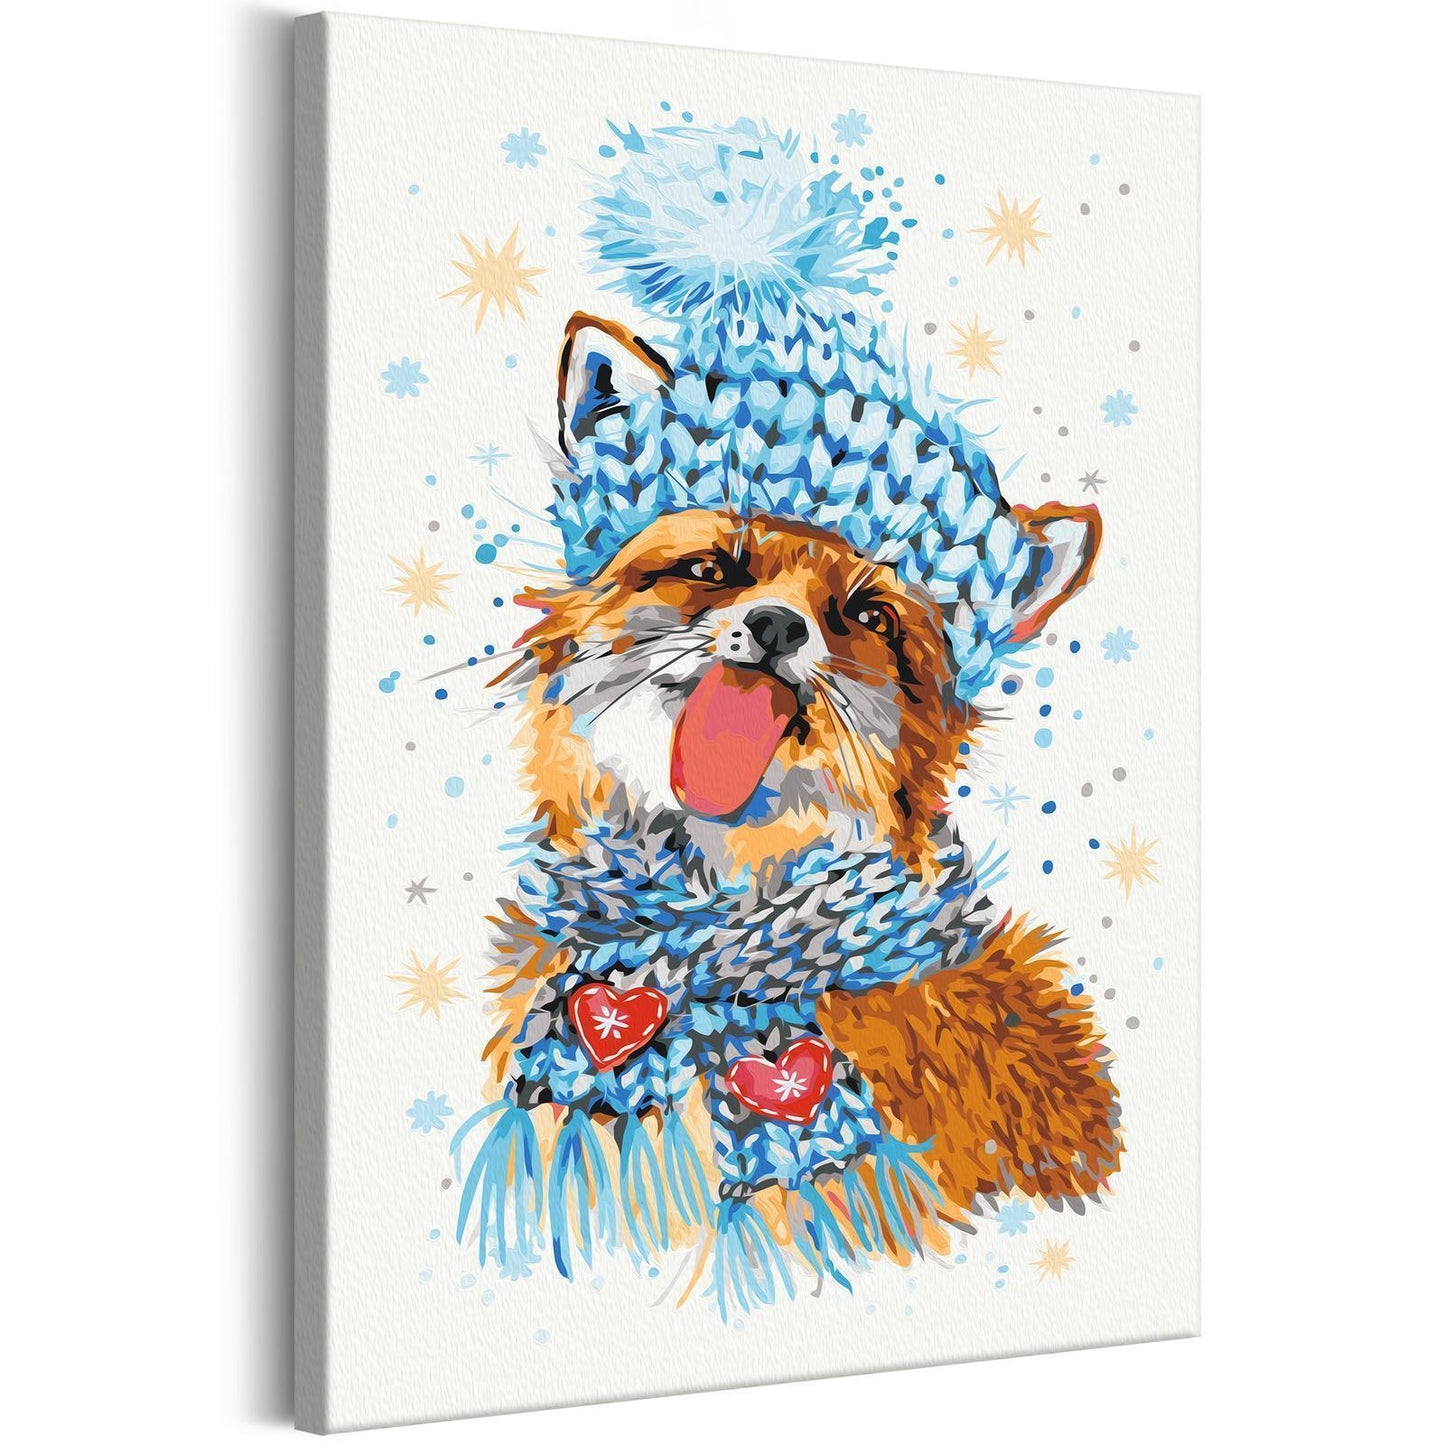 Doe-het-zelf op canvas schilderen - Impish Fox